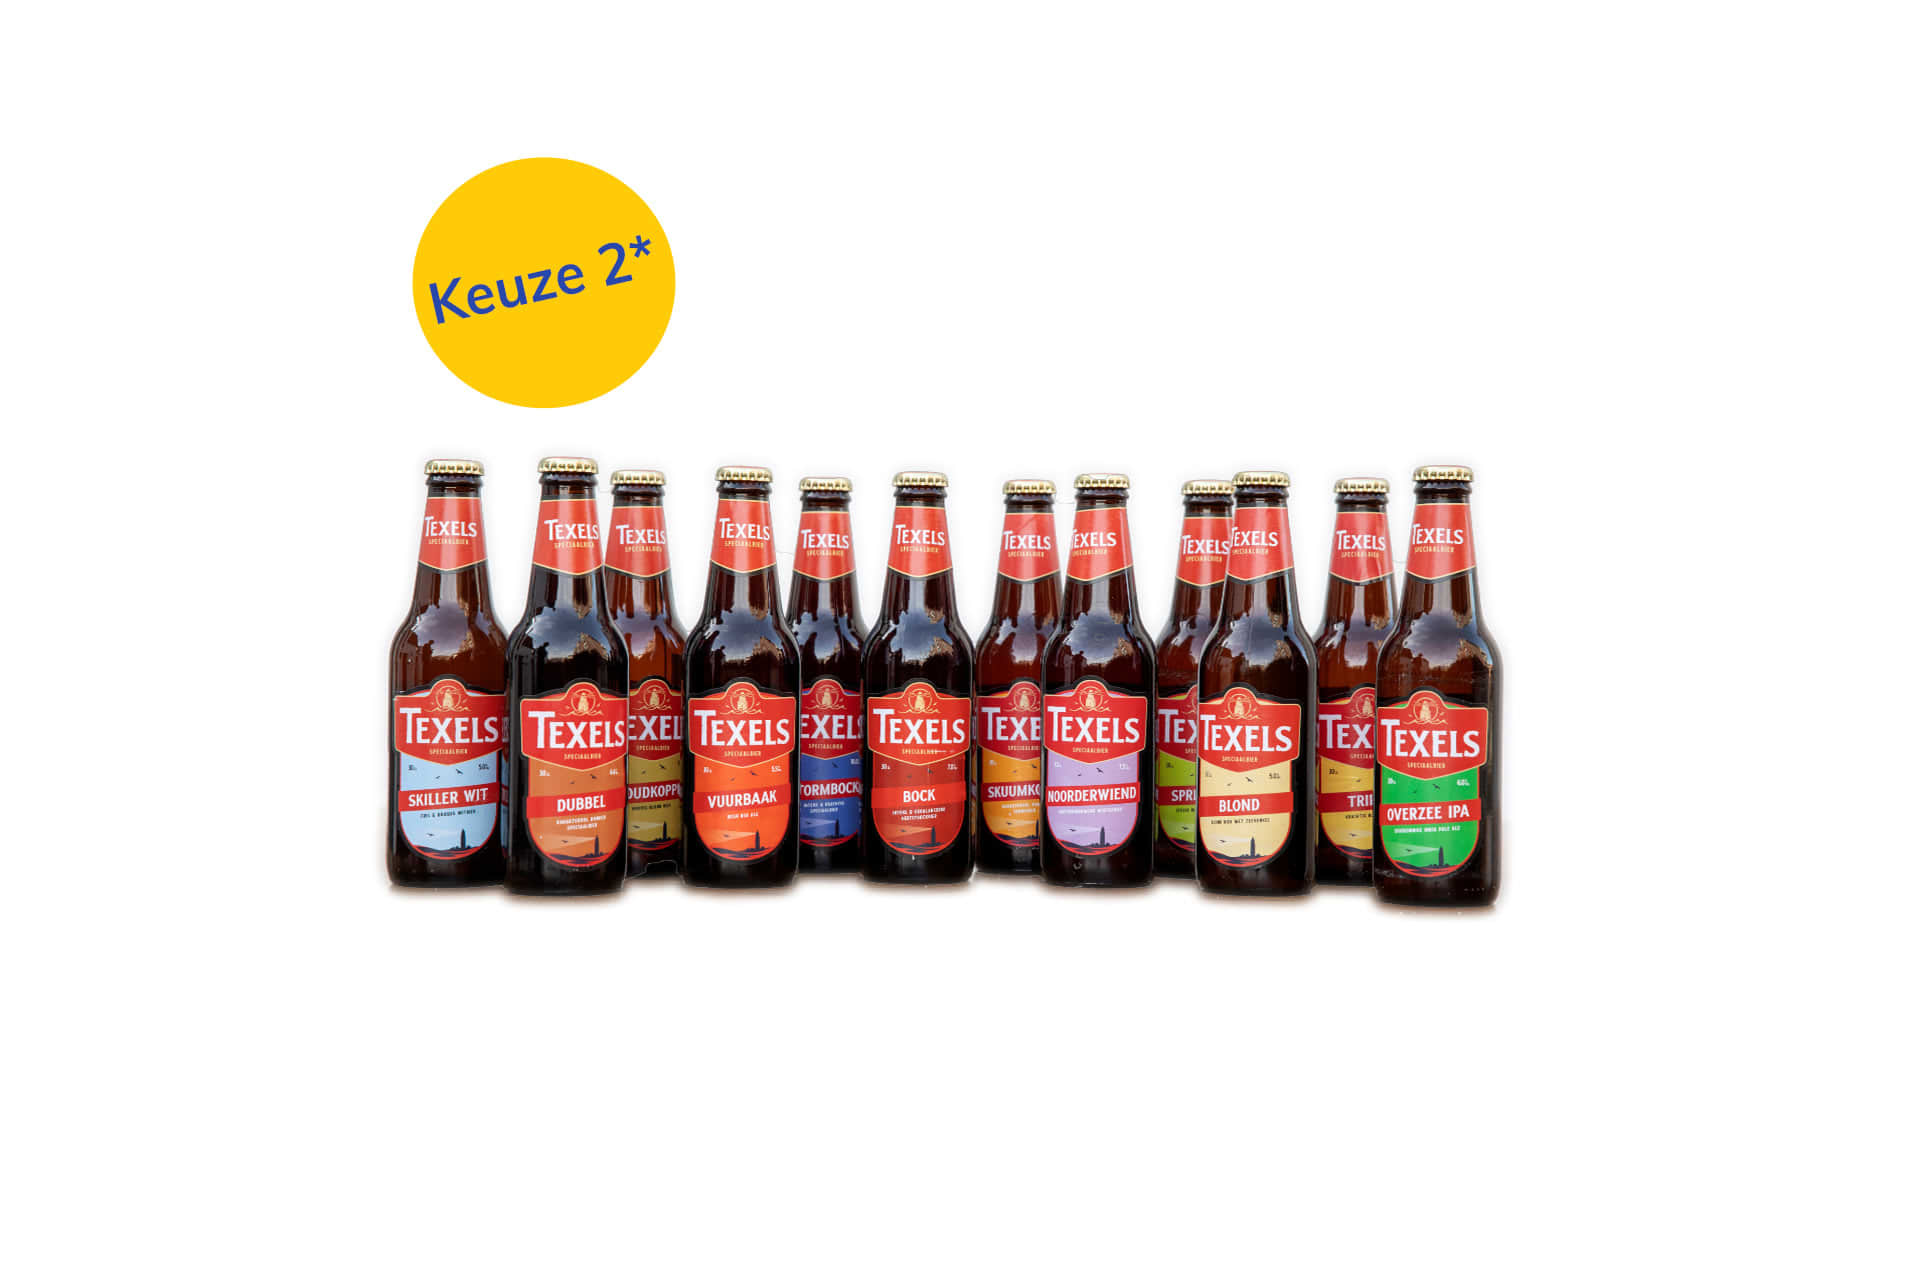 Texels beer package